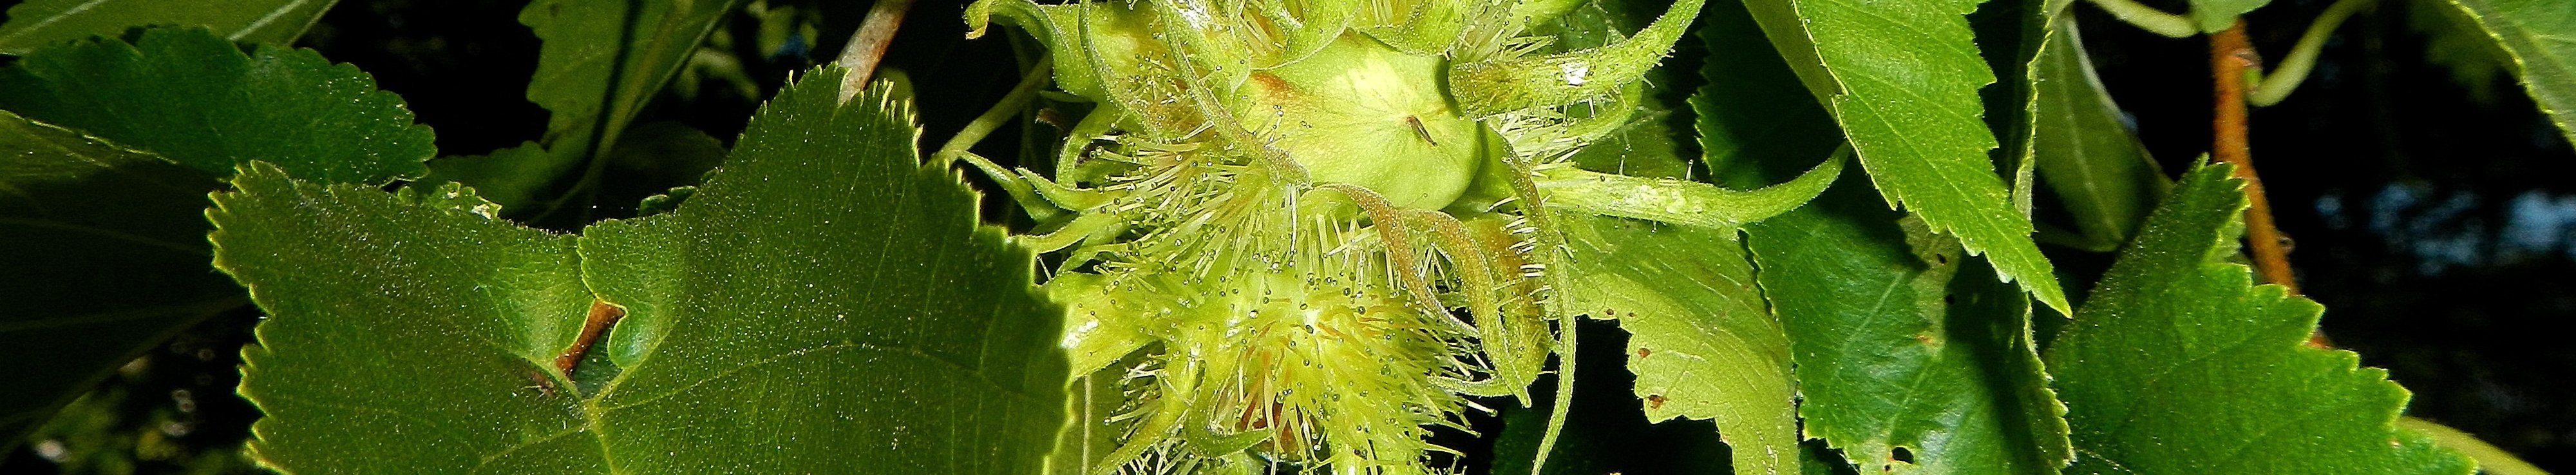 Glänzendgrüne gezähnte Blätter der Baumhasel umgeben eine gelbgrüne gefranste Baumhaselfrucht